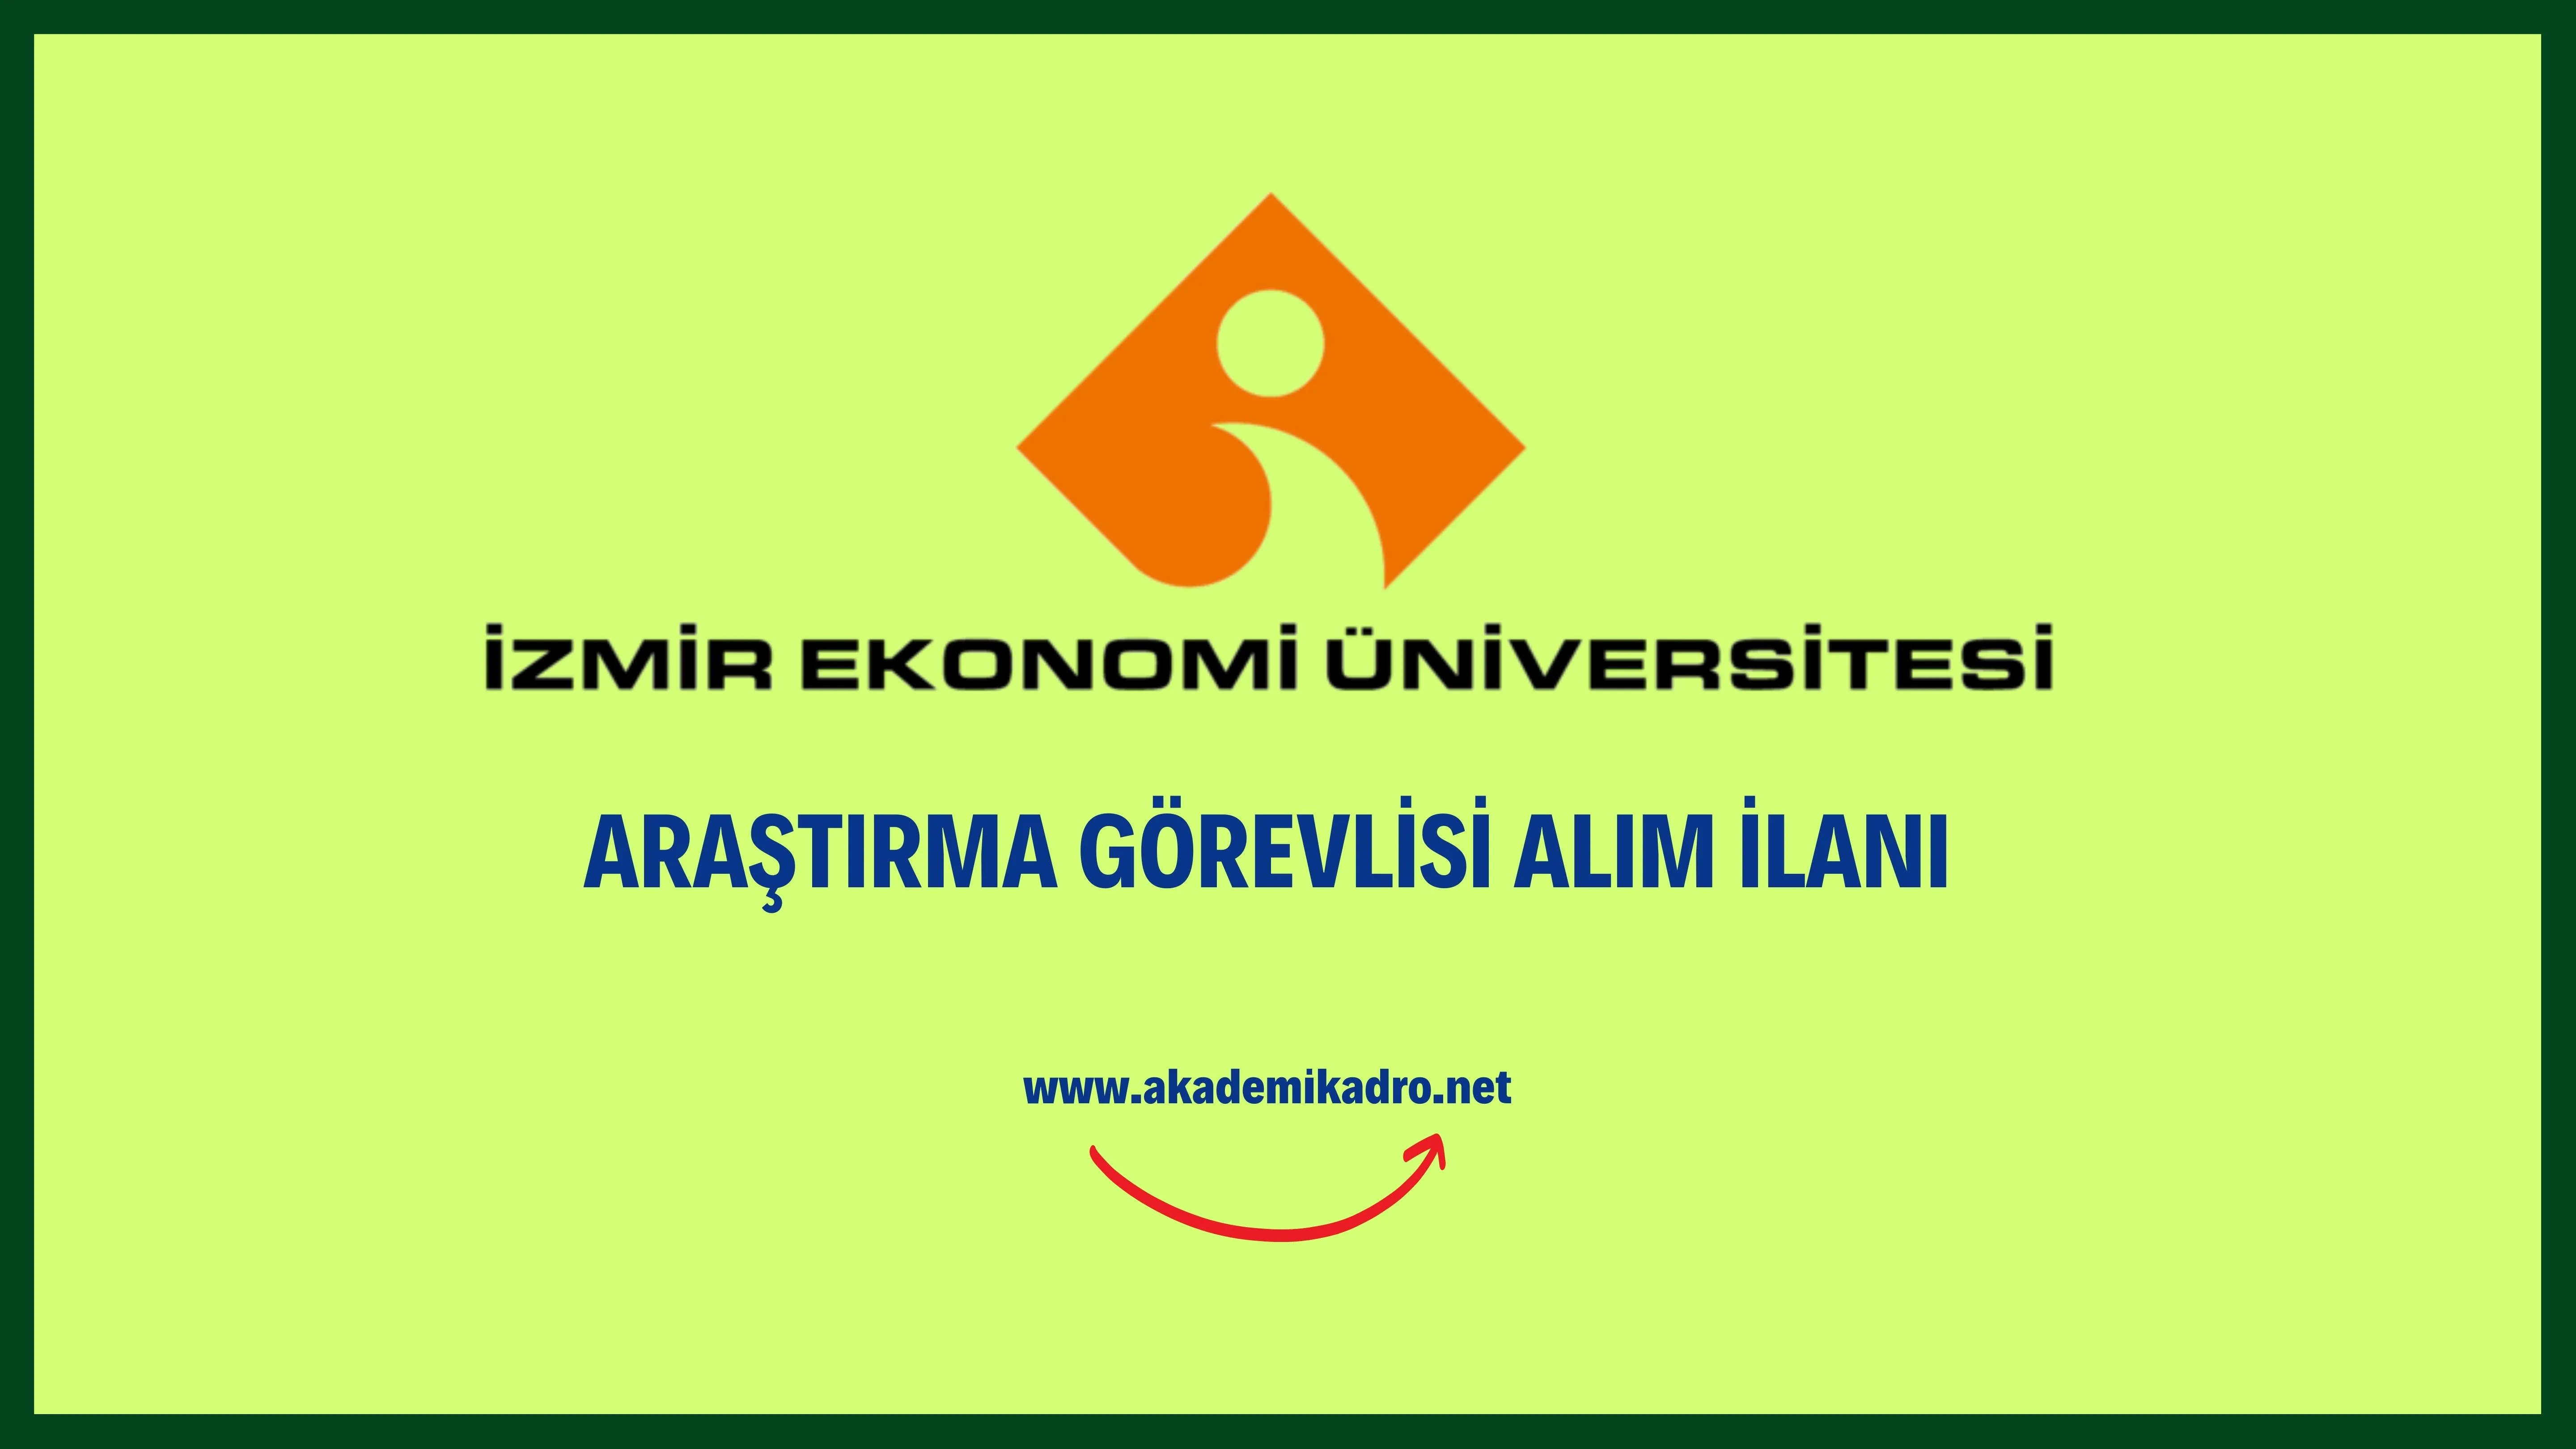 İzmir Ekonomi Üniversitesi 3 Araştırma görevlisi alacaktır. Son başvuru tarihi 09 Eylül 2022